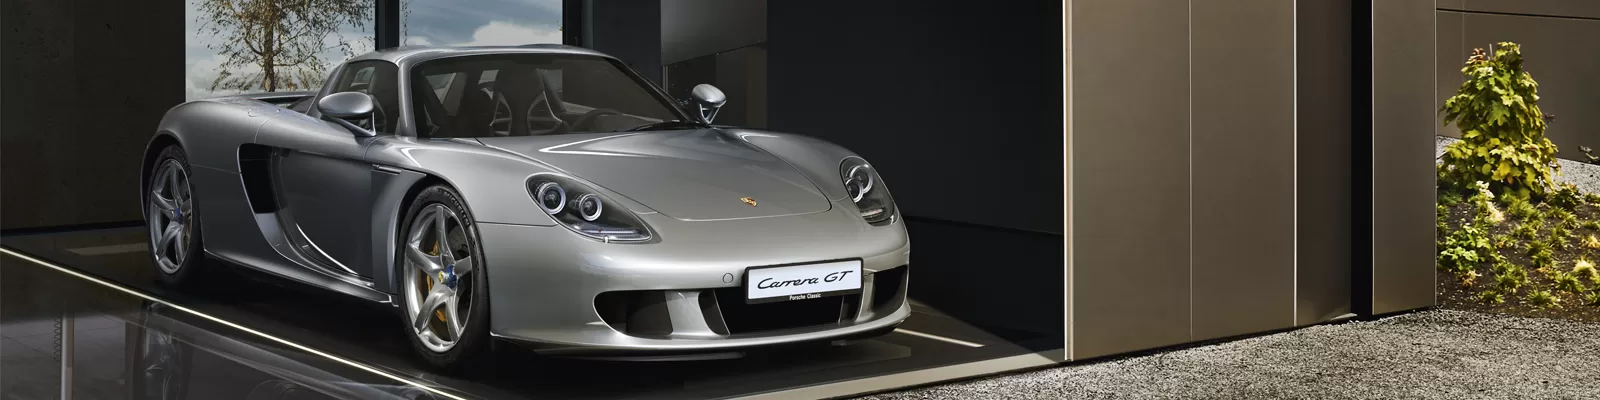 Porsche Carrera GT – будущее уже сегодня